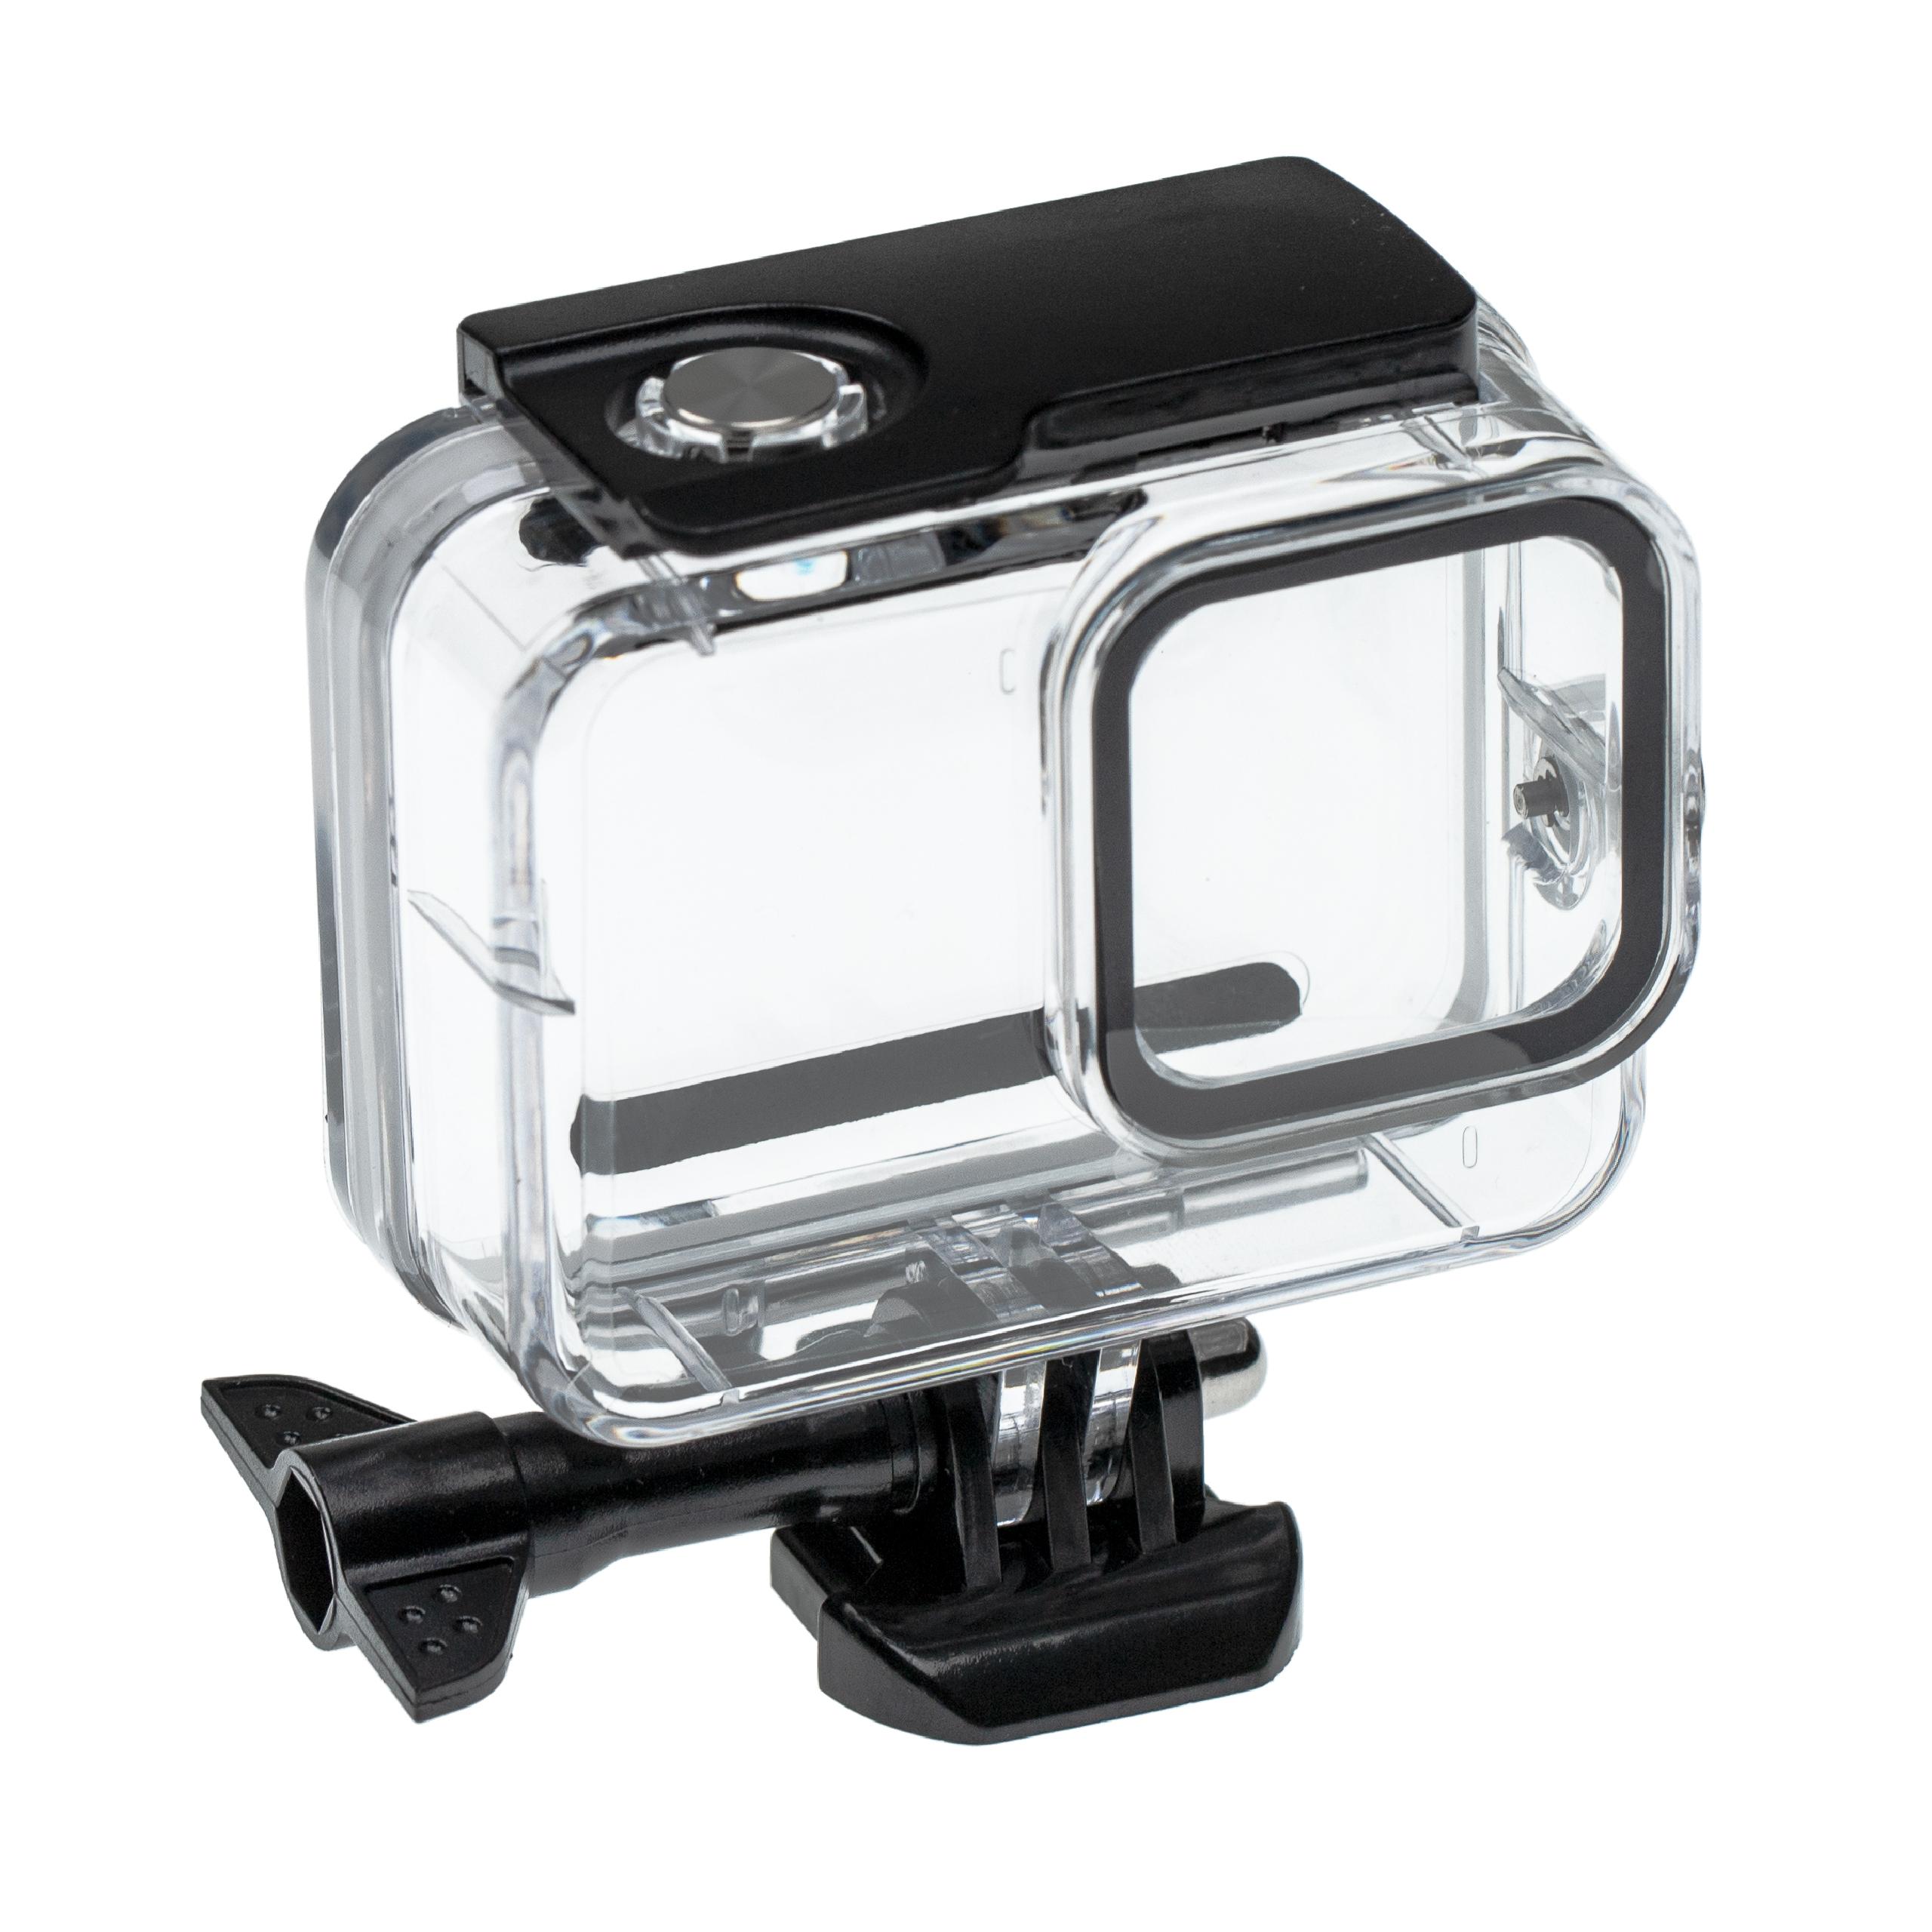 Obudowa wodoszczelna do kamery sportowej GoPro Hero 8 - maks. głębokość 60 m